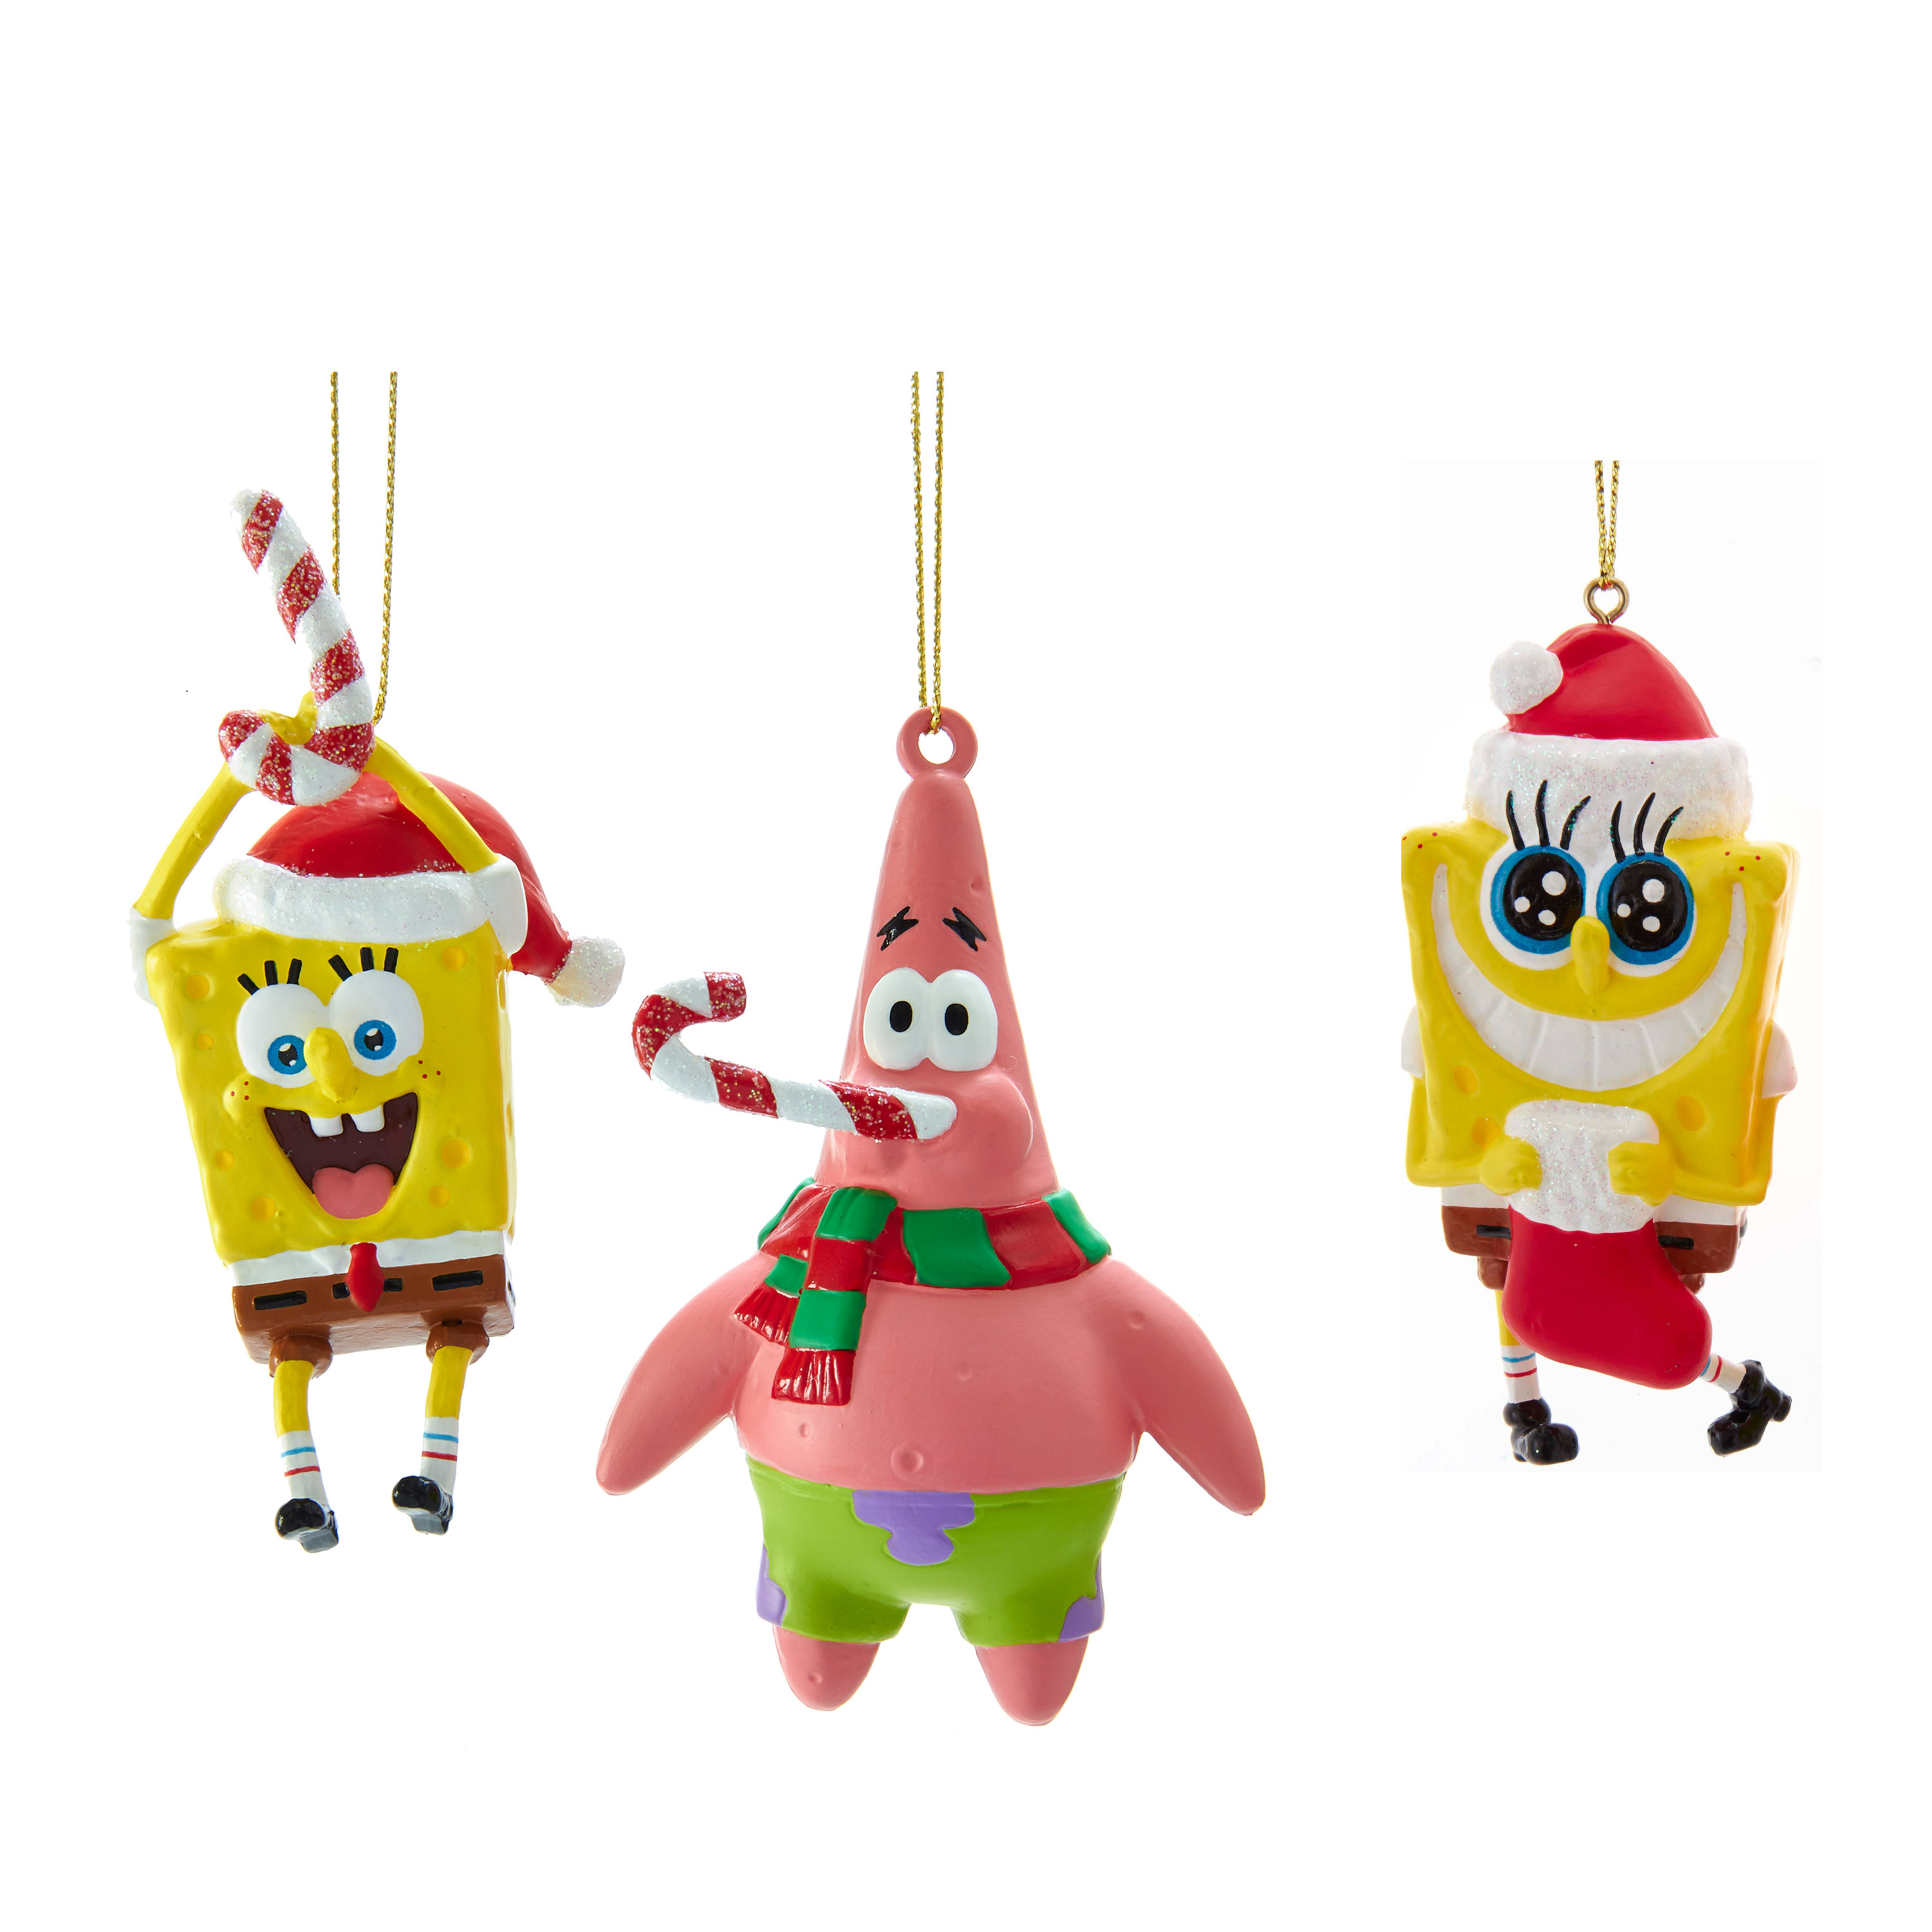 SpongeBob 3-Piece Christmas Ornament Set - image 1 of 7